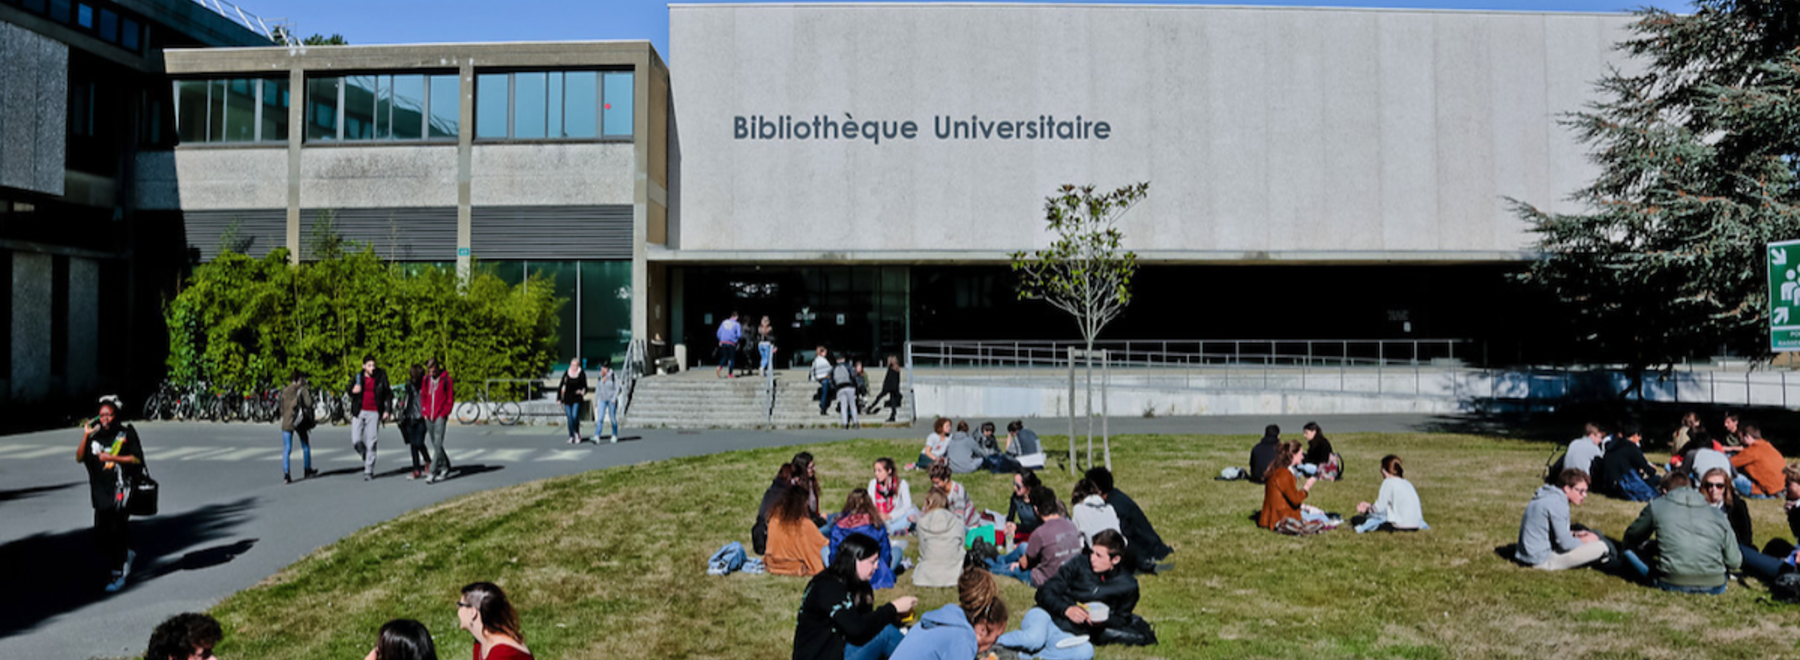 Campus de Beaulieu - Julien Mignot